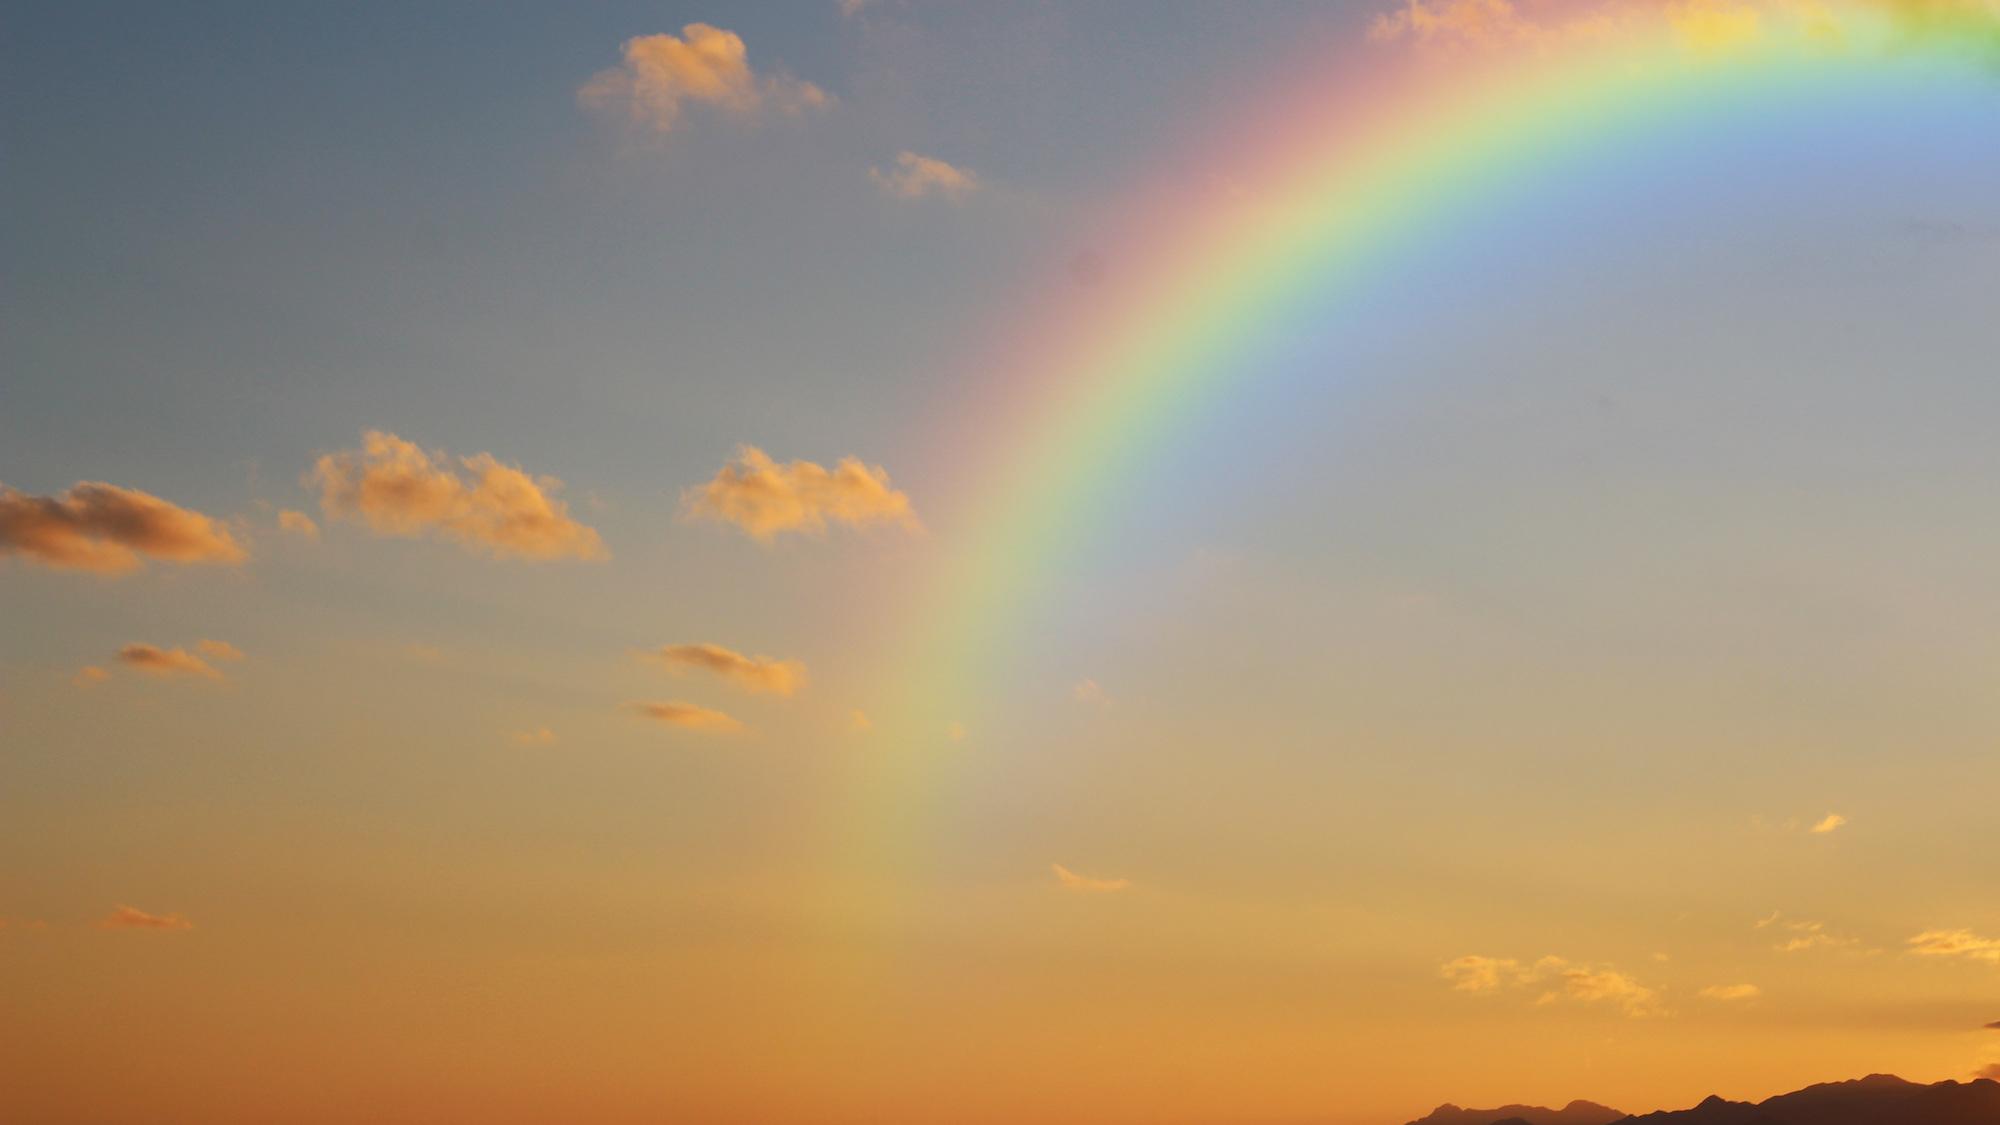 Der Regenbogen steht in der Bibel für den Bund Gottes mit Noach und seinen Nachkommen. (c) www.pixabay.com